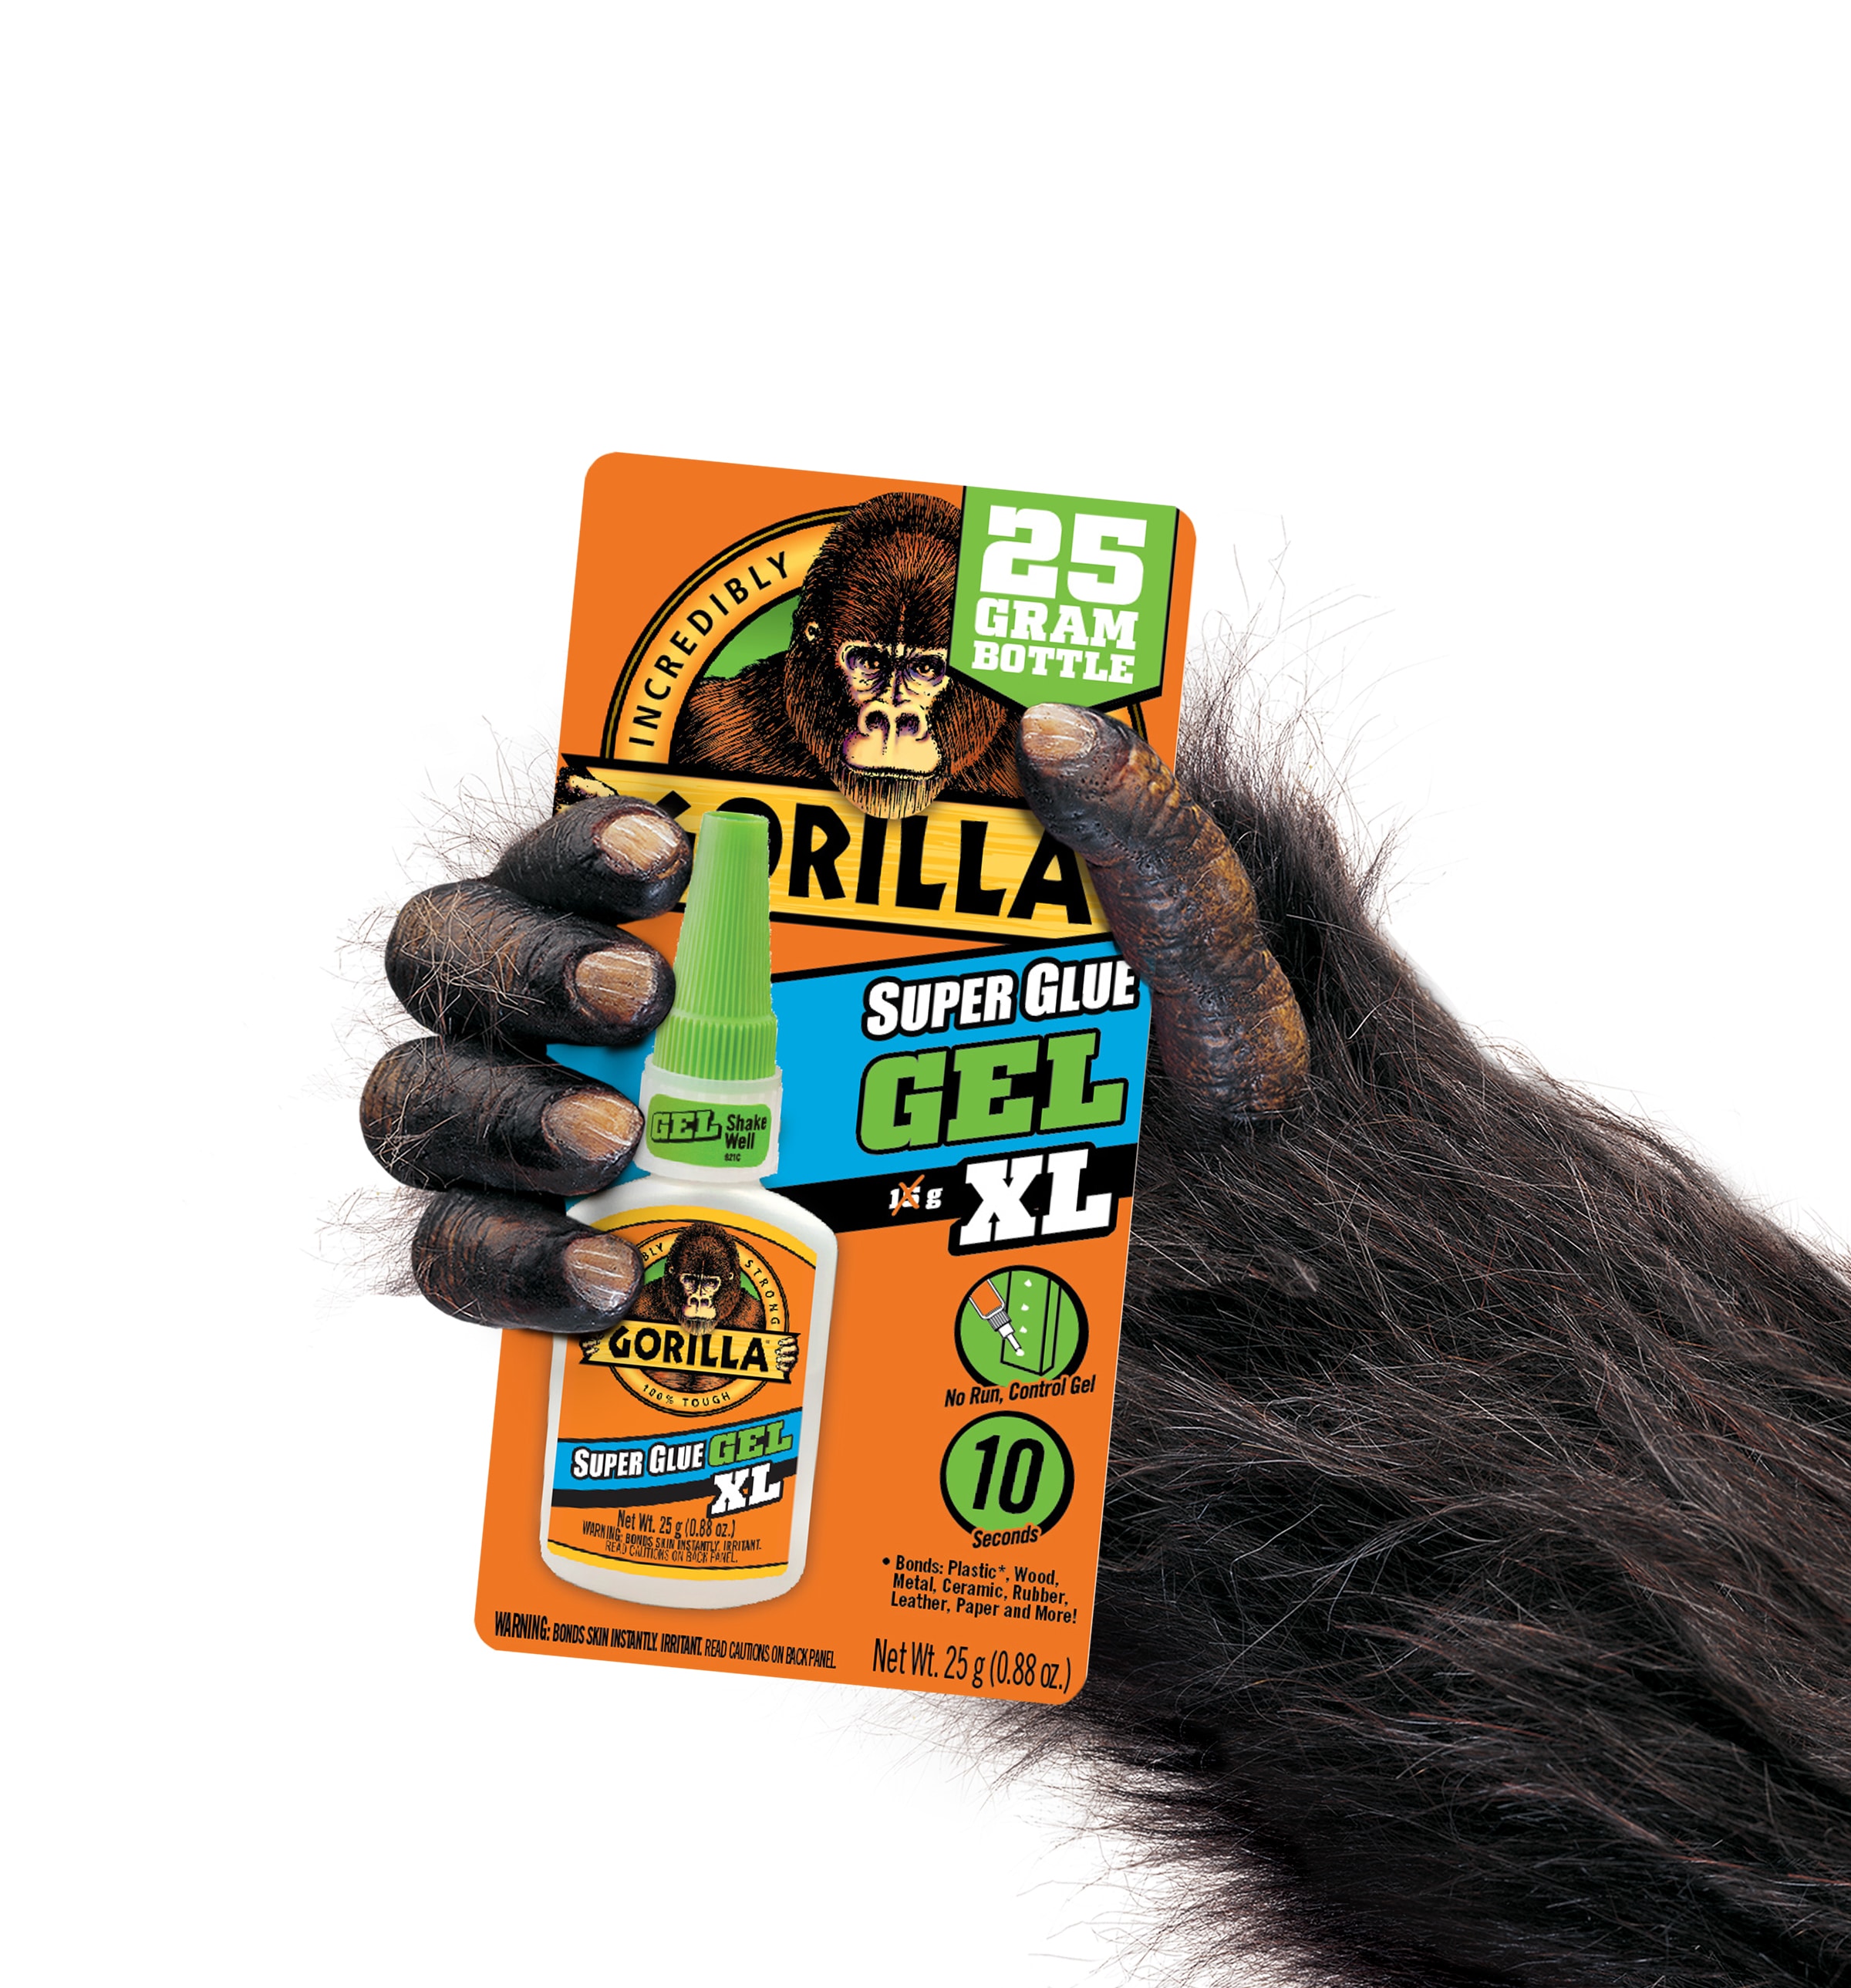 Gorilla Super Glue 24-gram - Quick Dry, Shock Resistant, Multi-use